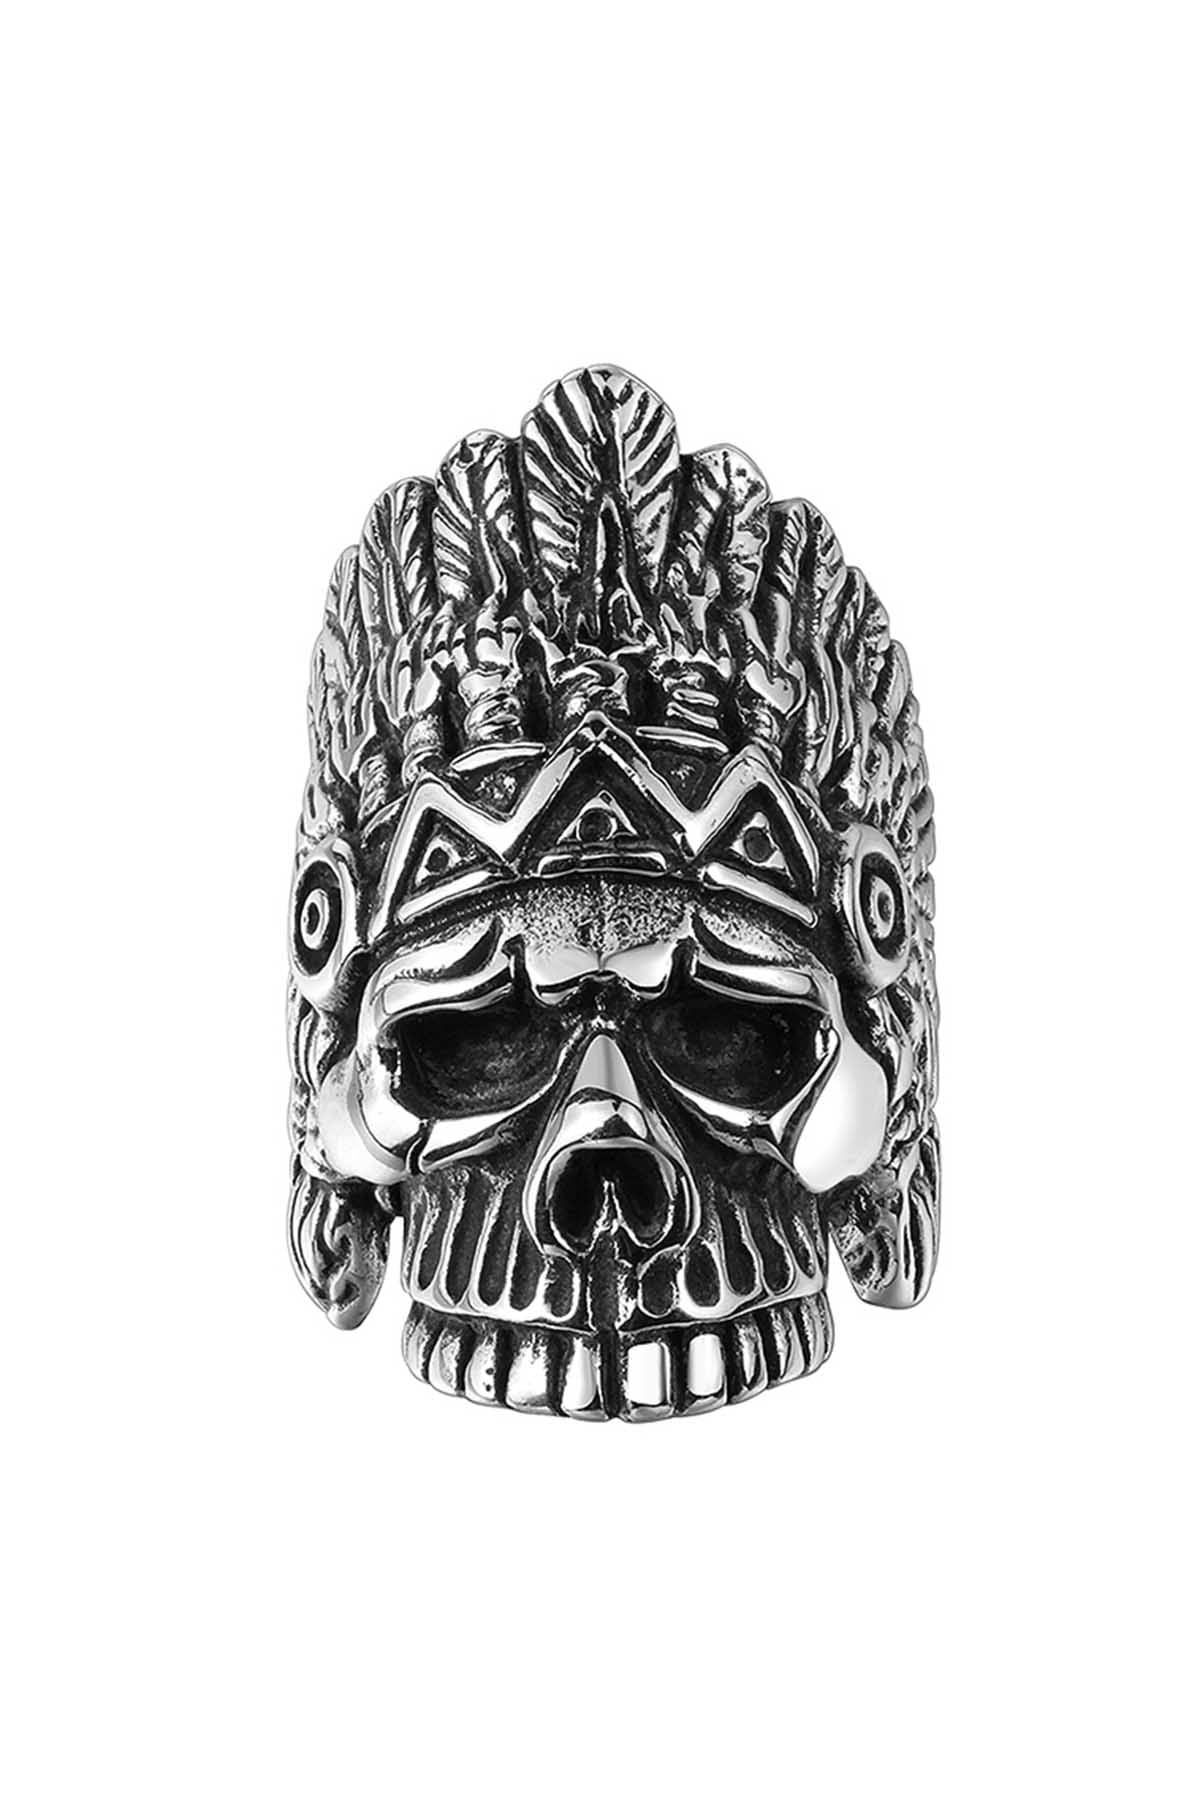 Gomaya Tribal Skull Stainless Steel Ring